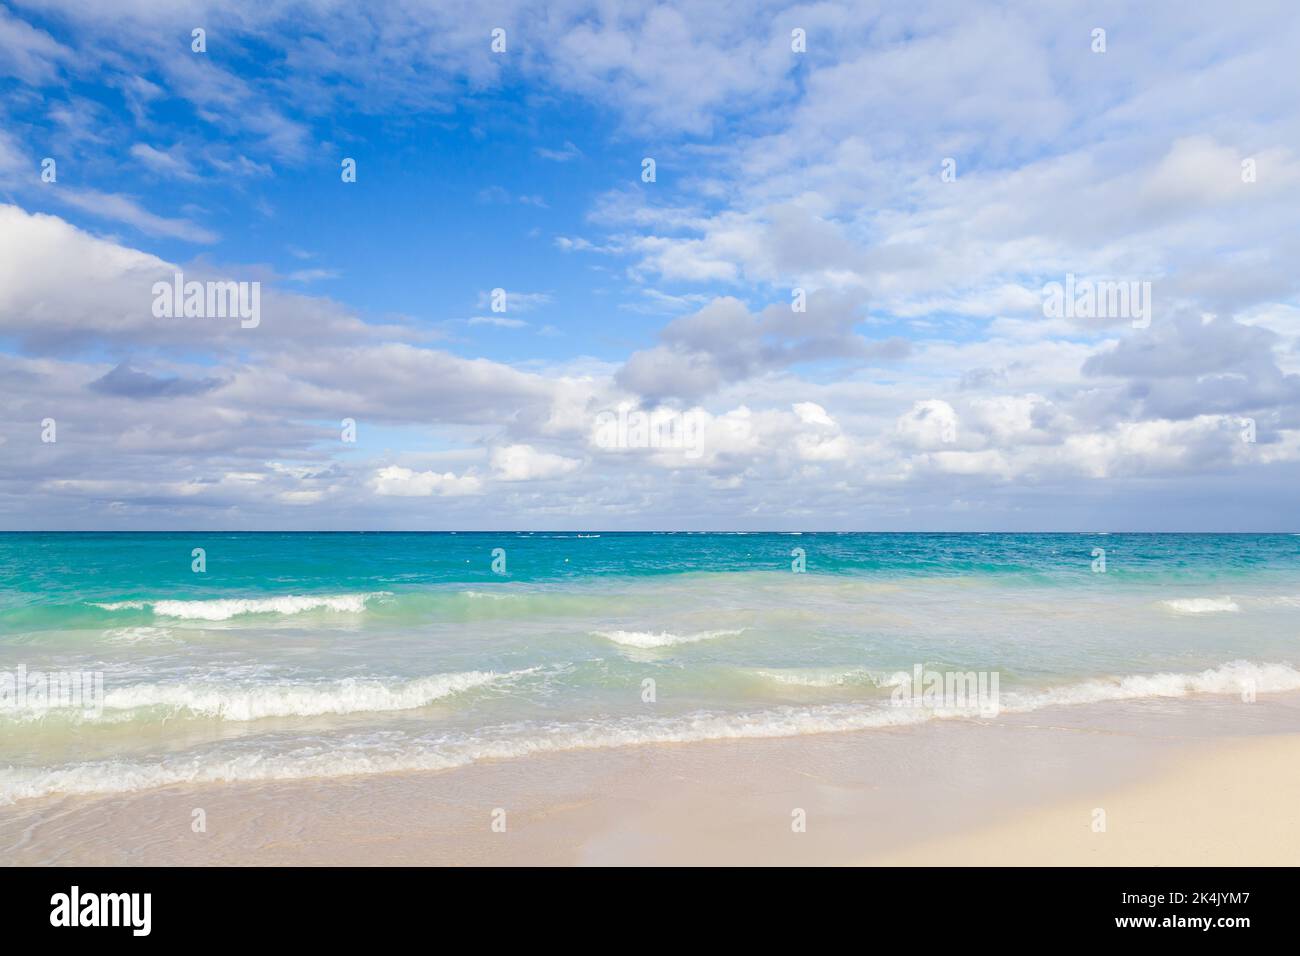 Paesaggio costiero caraibico con costa sabbiosa vuota dell'oceano Atlantico e onde costiere in una giornata di sole. repubblica Dominicana. Bavaro spiaggia Foto Stock